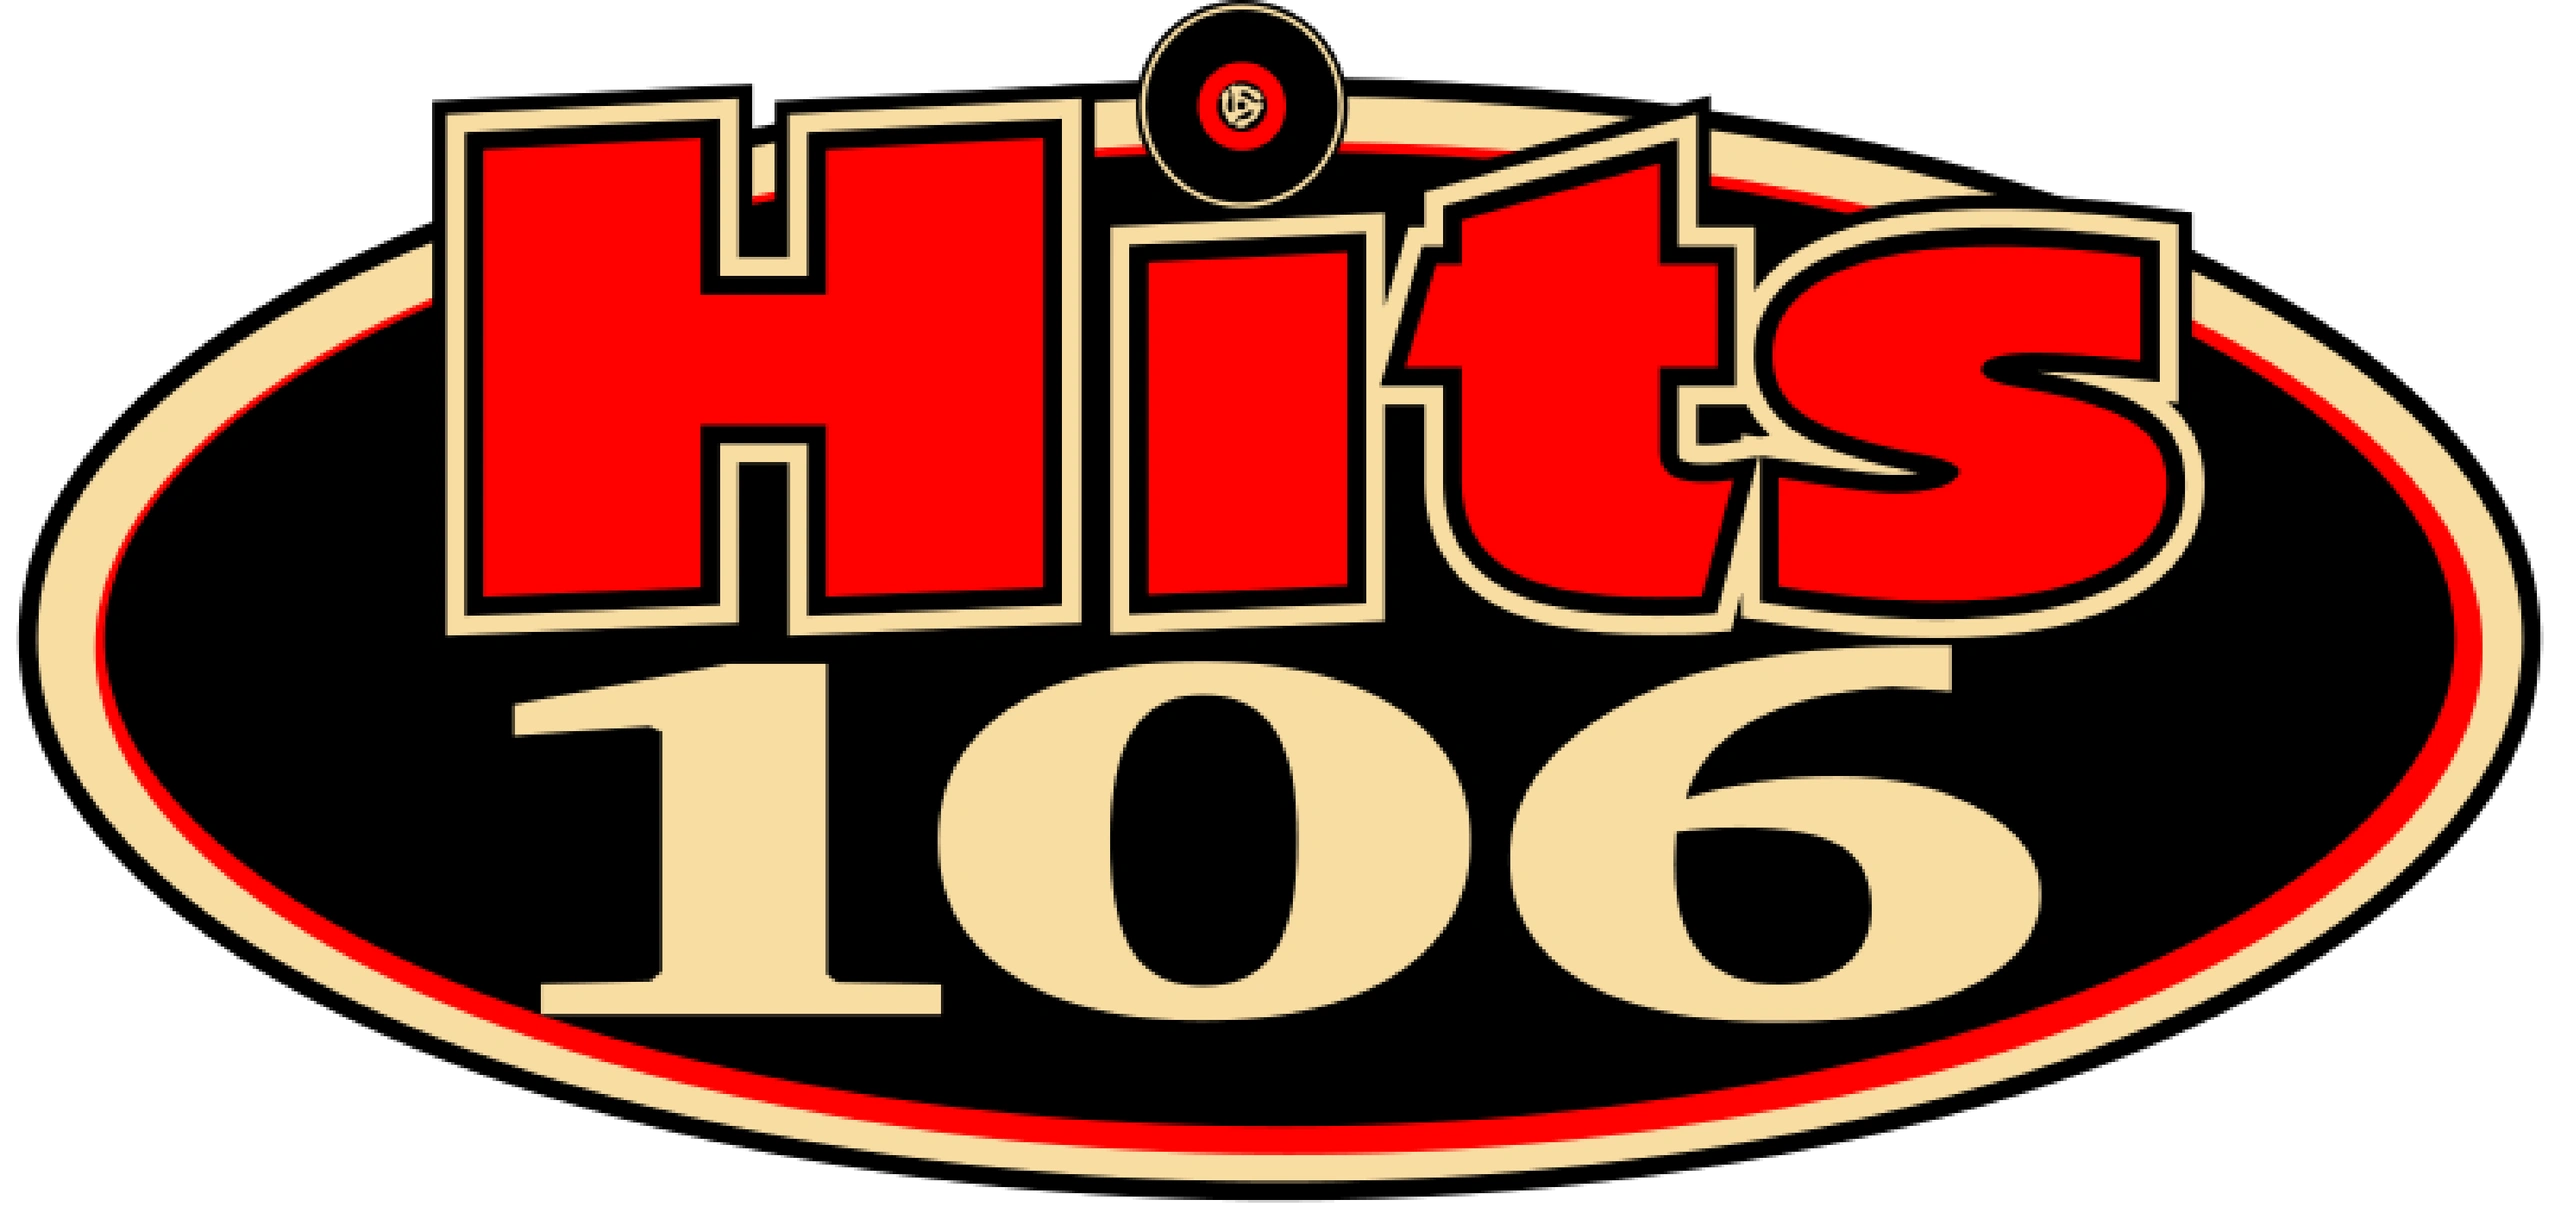 WGHR-FM 106.3 Greatest Hits Radio Station